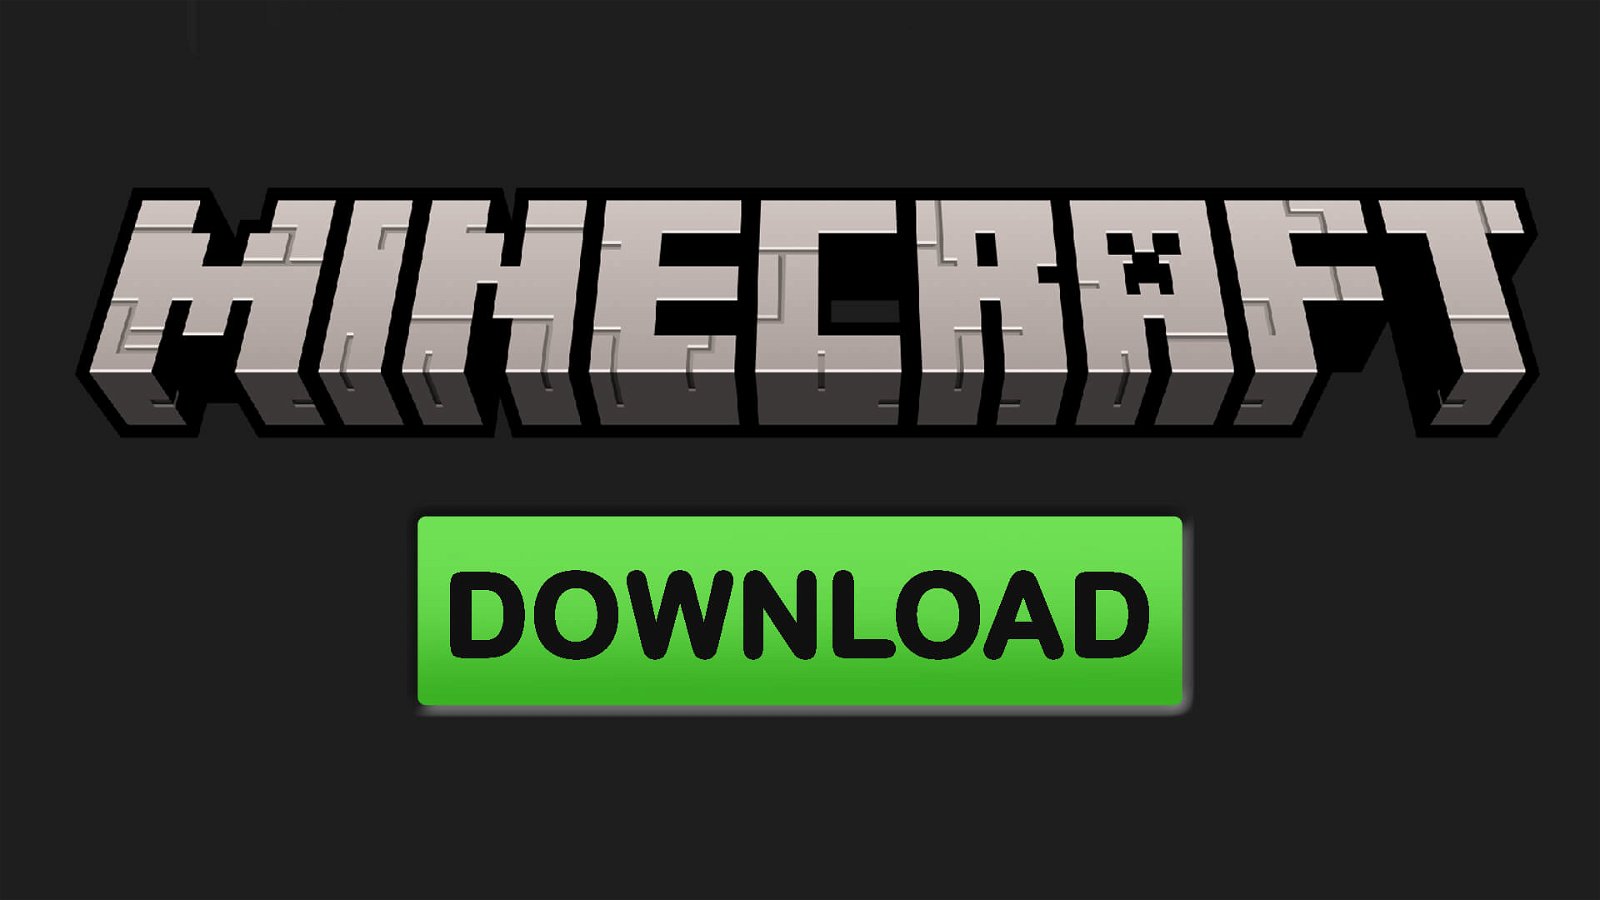 Download Minecraft Free